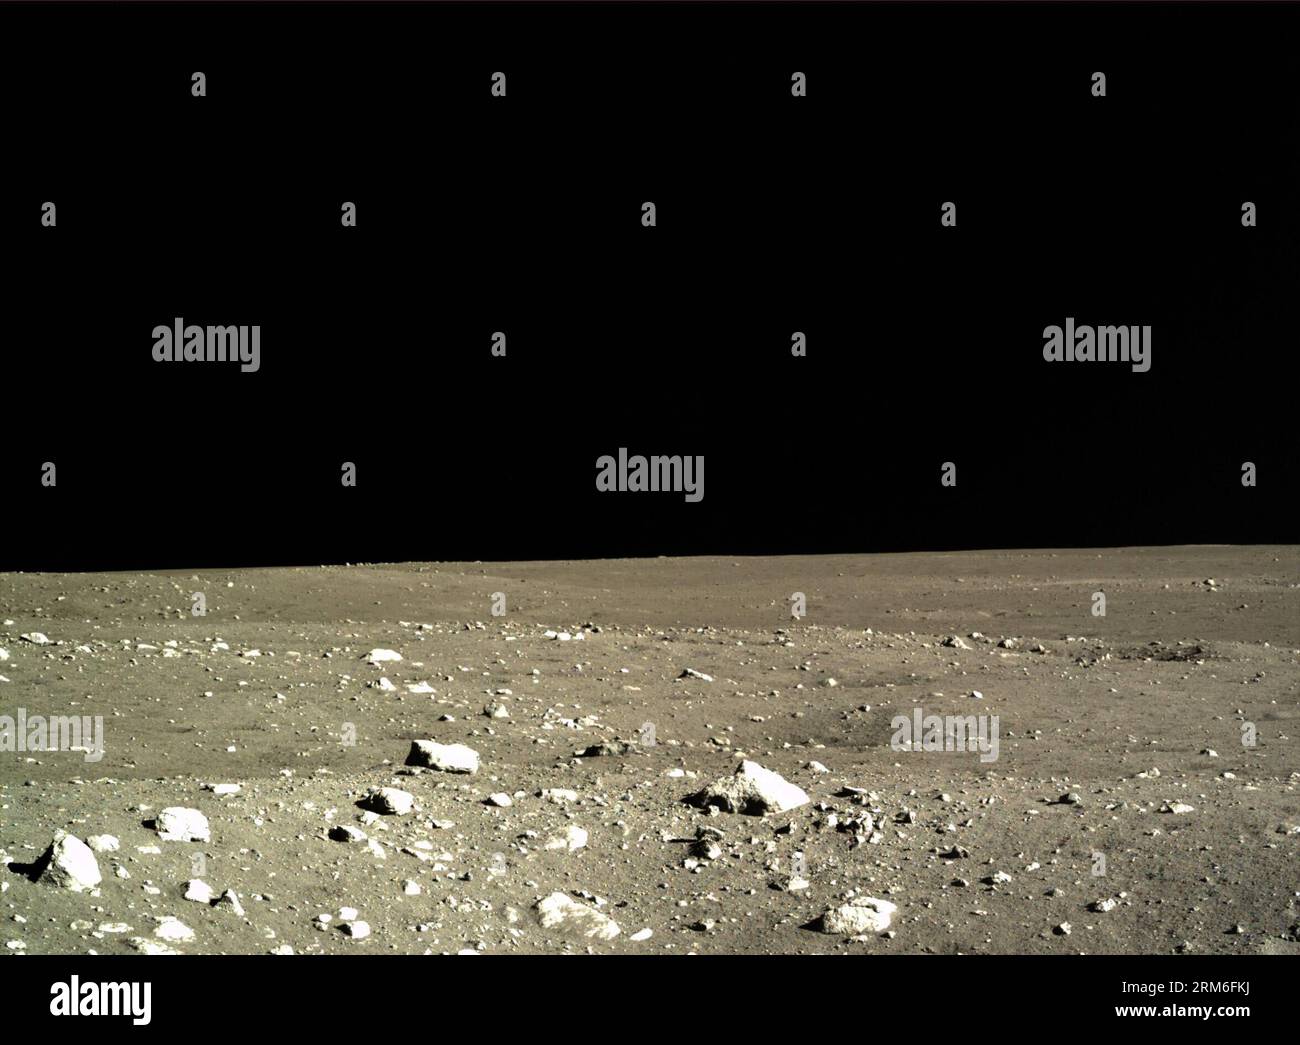 (140110) -- PECHINO (Xinhua) -- foto scattata dalla macchina fotografica del lander lunare Chang e-3 il 15 dicembre 2013 mostra il paesaggio lunare durante il primo cerchio del giorno lunare della missione della sonda lunare Chang e-3. La Chinese Academy of Sciences ha pubblicato un gruppo di foto scattate sul paesaggio lunare dalla fotocamera di atterraggio, dalla fotocamera di forma terrestre e dalla fotocamera panoramica il 10 gennaio 2014. La sonda lunare cinese Chang e-3, con il primo rover lunare del paese a bordo, è atterrata sulla luna il 14 dicembre 2013, segnando la prima volta che la Cina ha inviato una navicella spaziale su una terra morbida sulla superficie di un corpo extraterrestre. (Xinhua) (cjq) CHINA-S Foto Stock